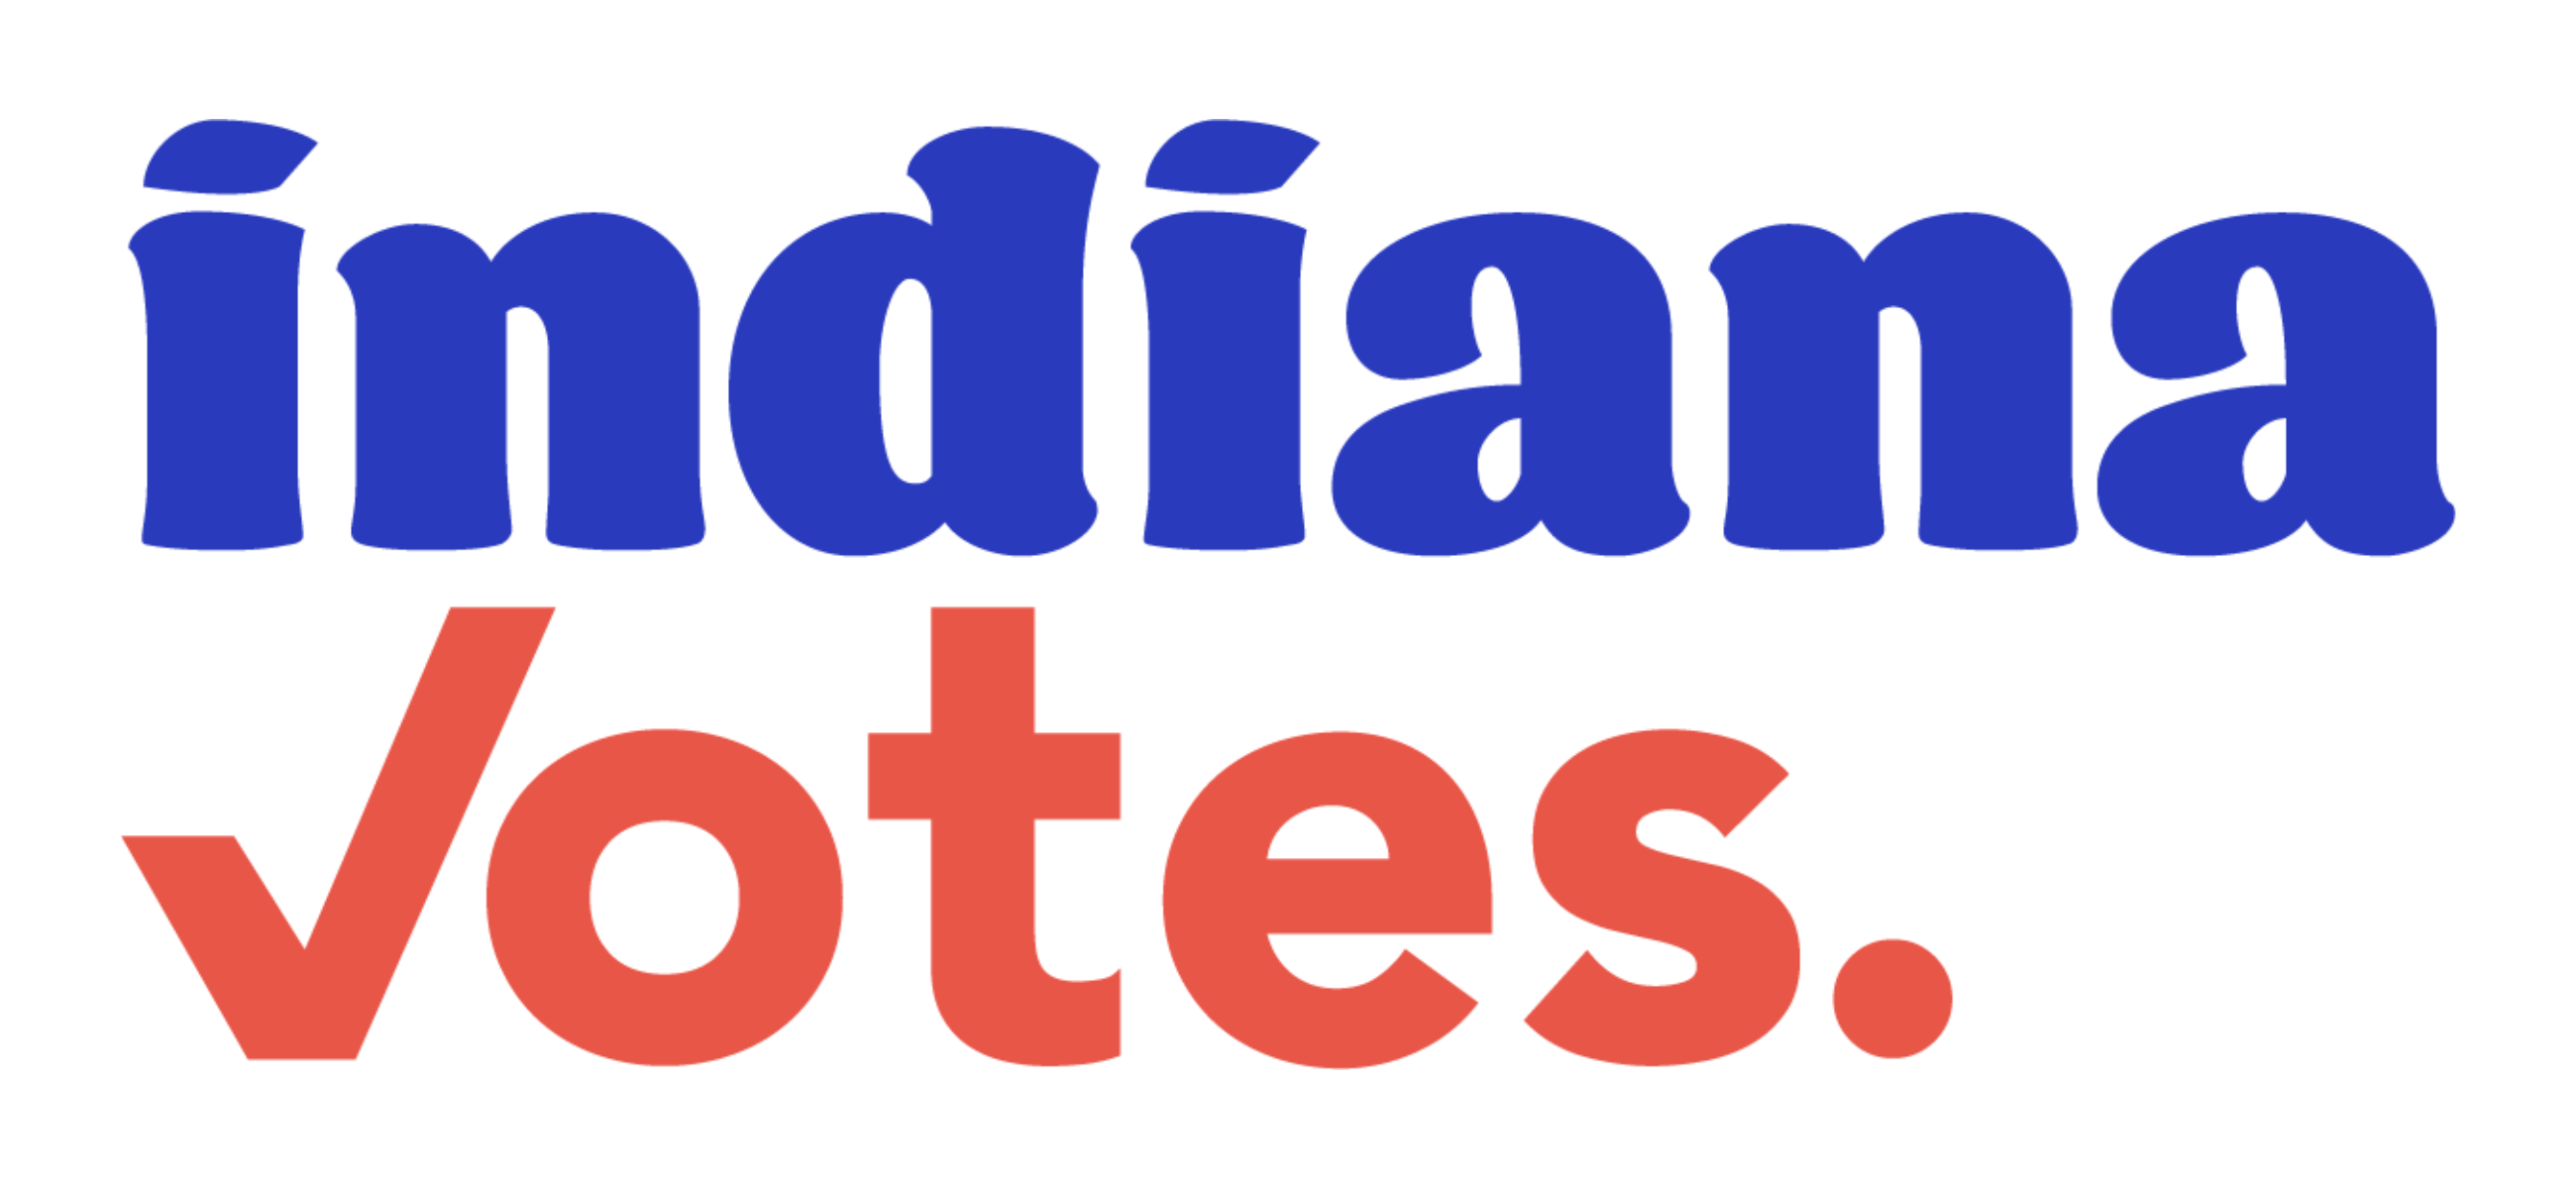 Indiana votes